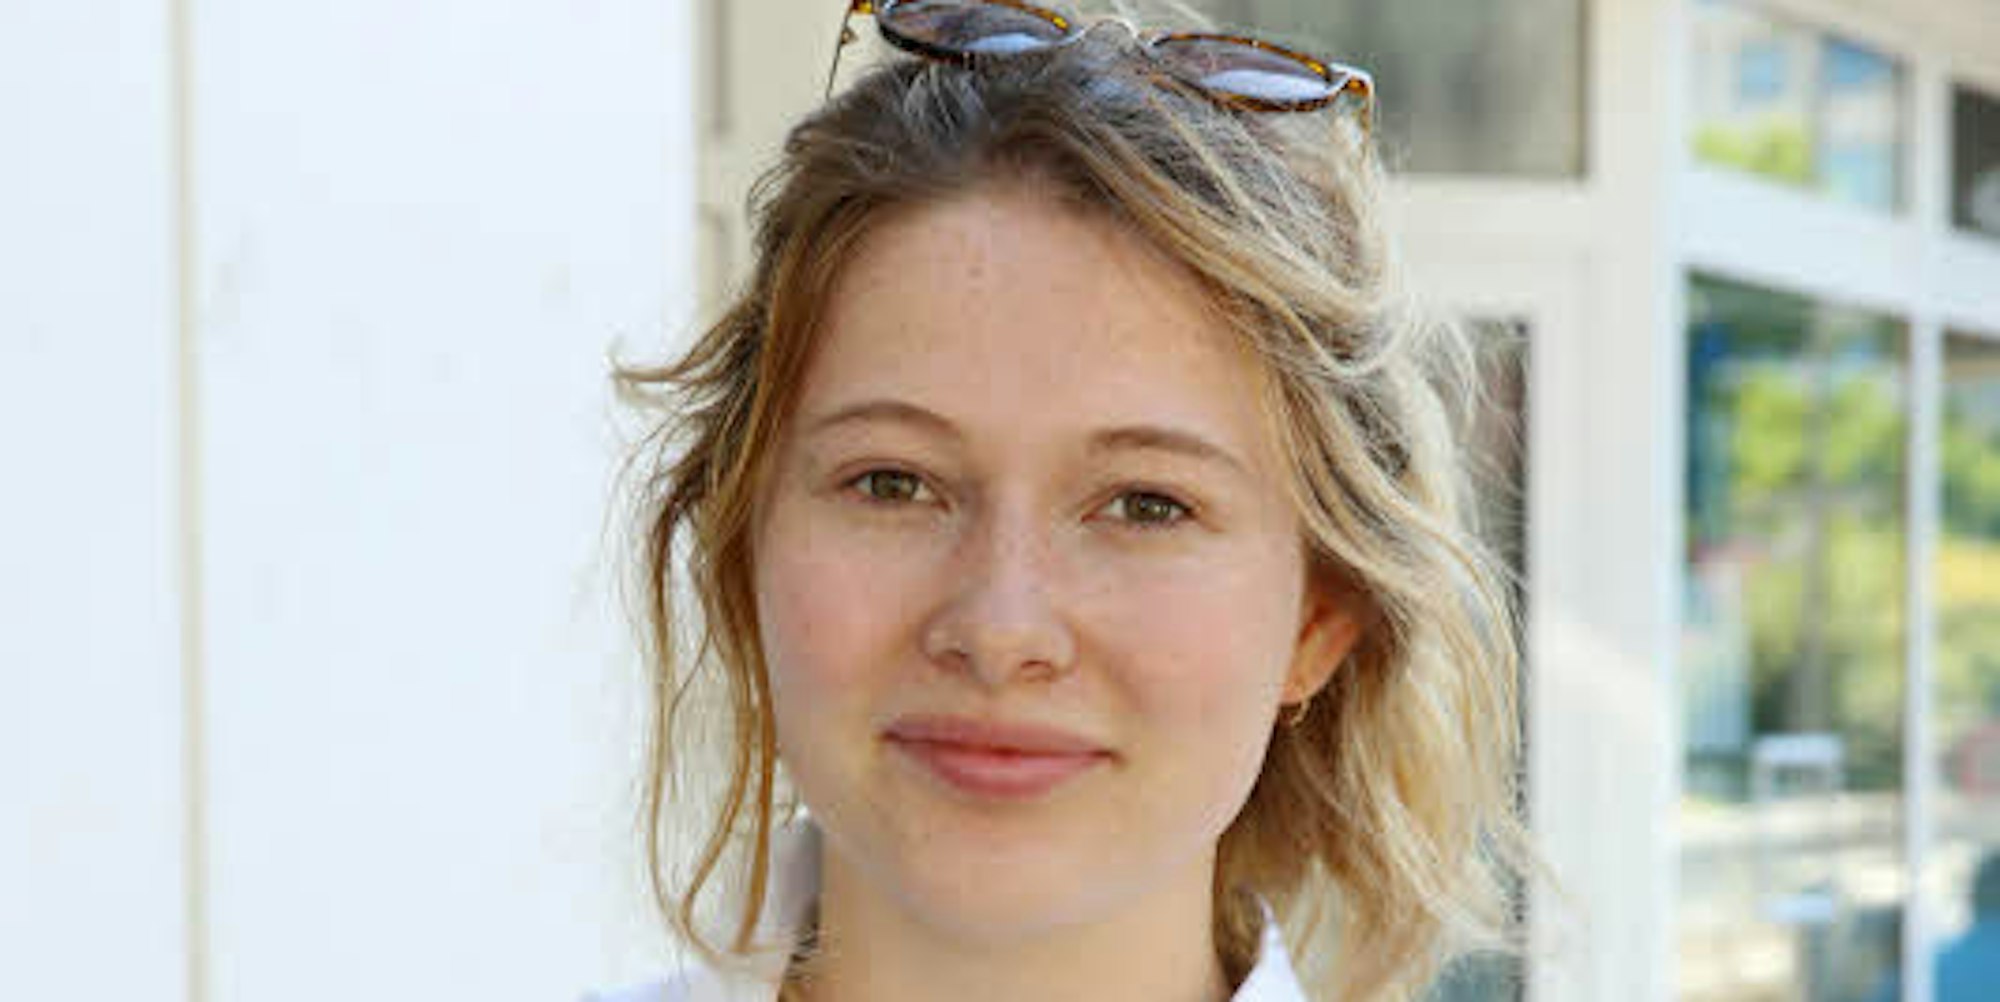 Mayleen Maassen, 21